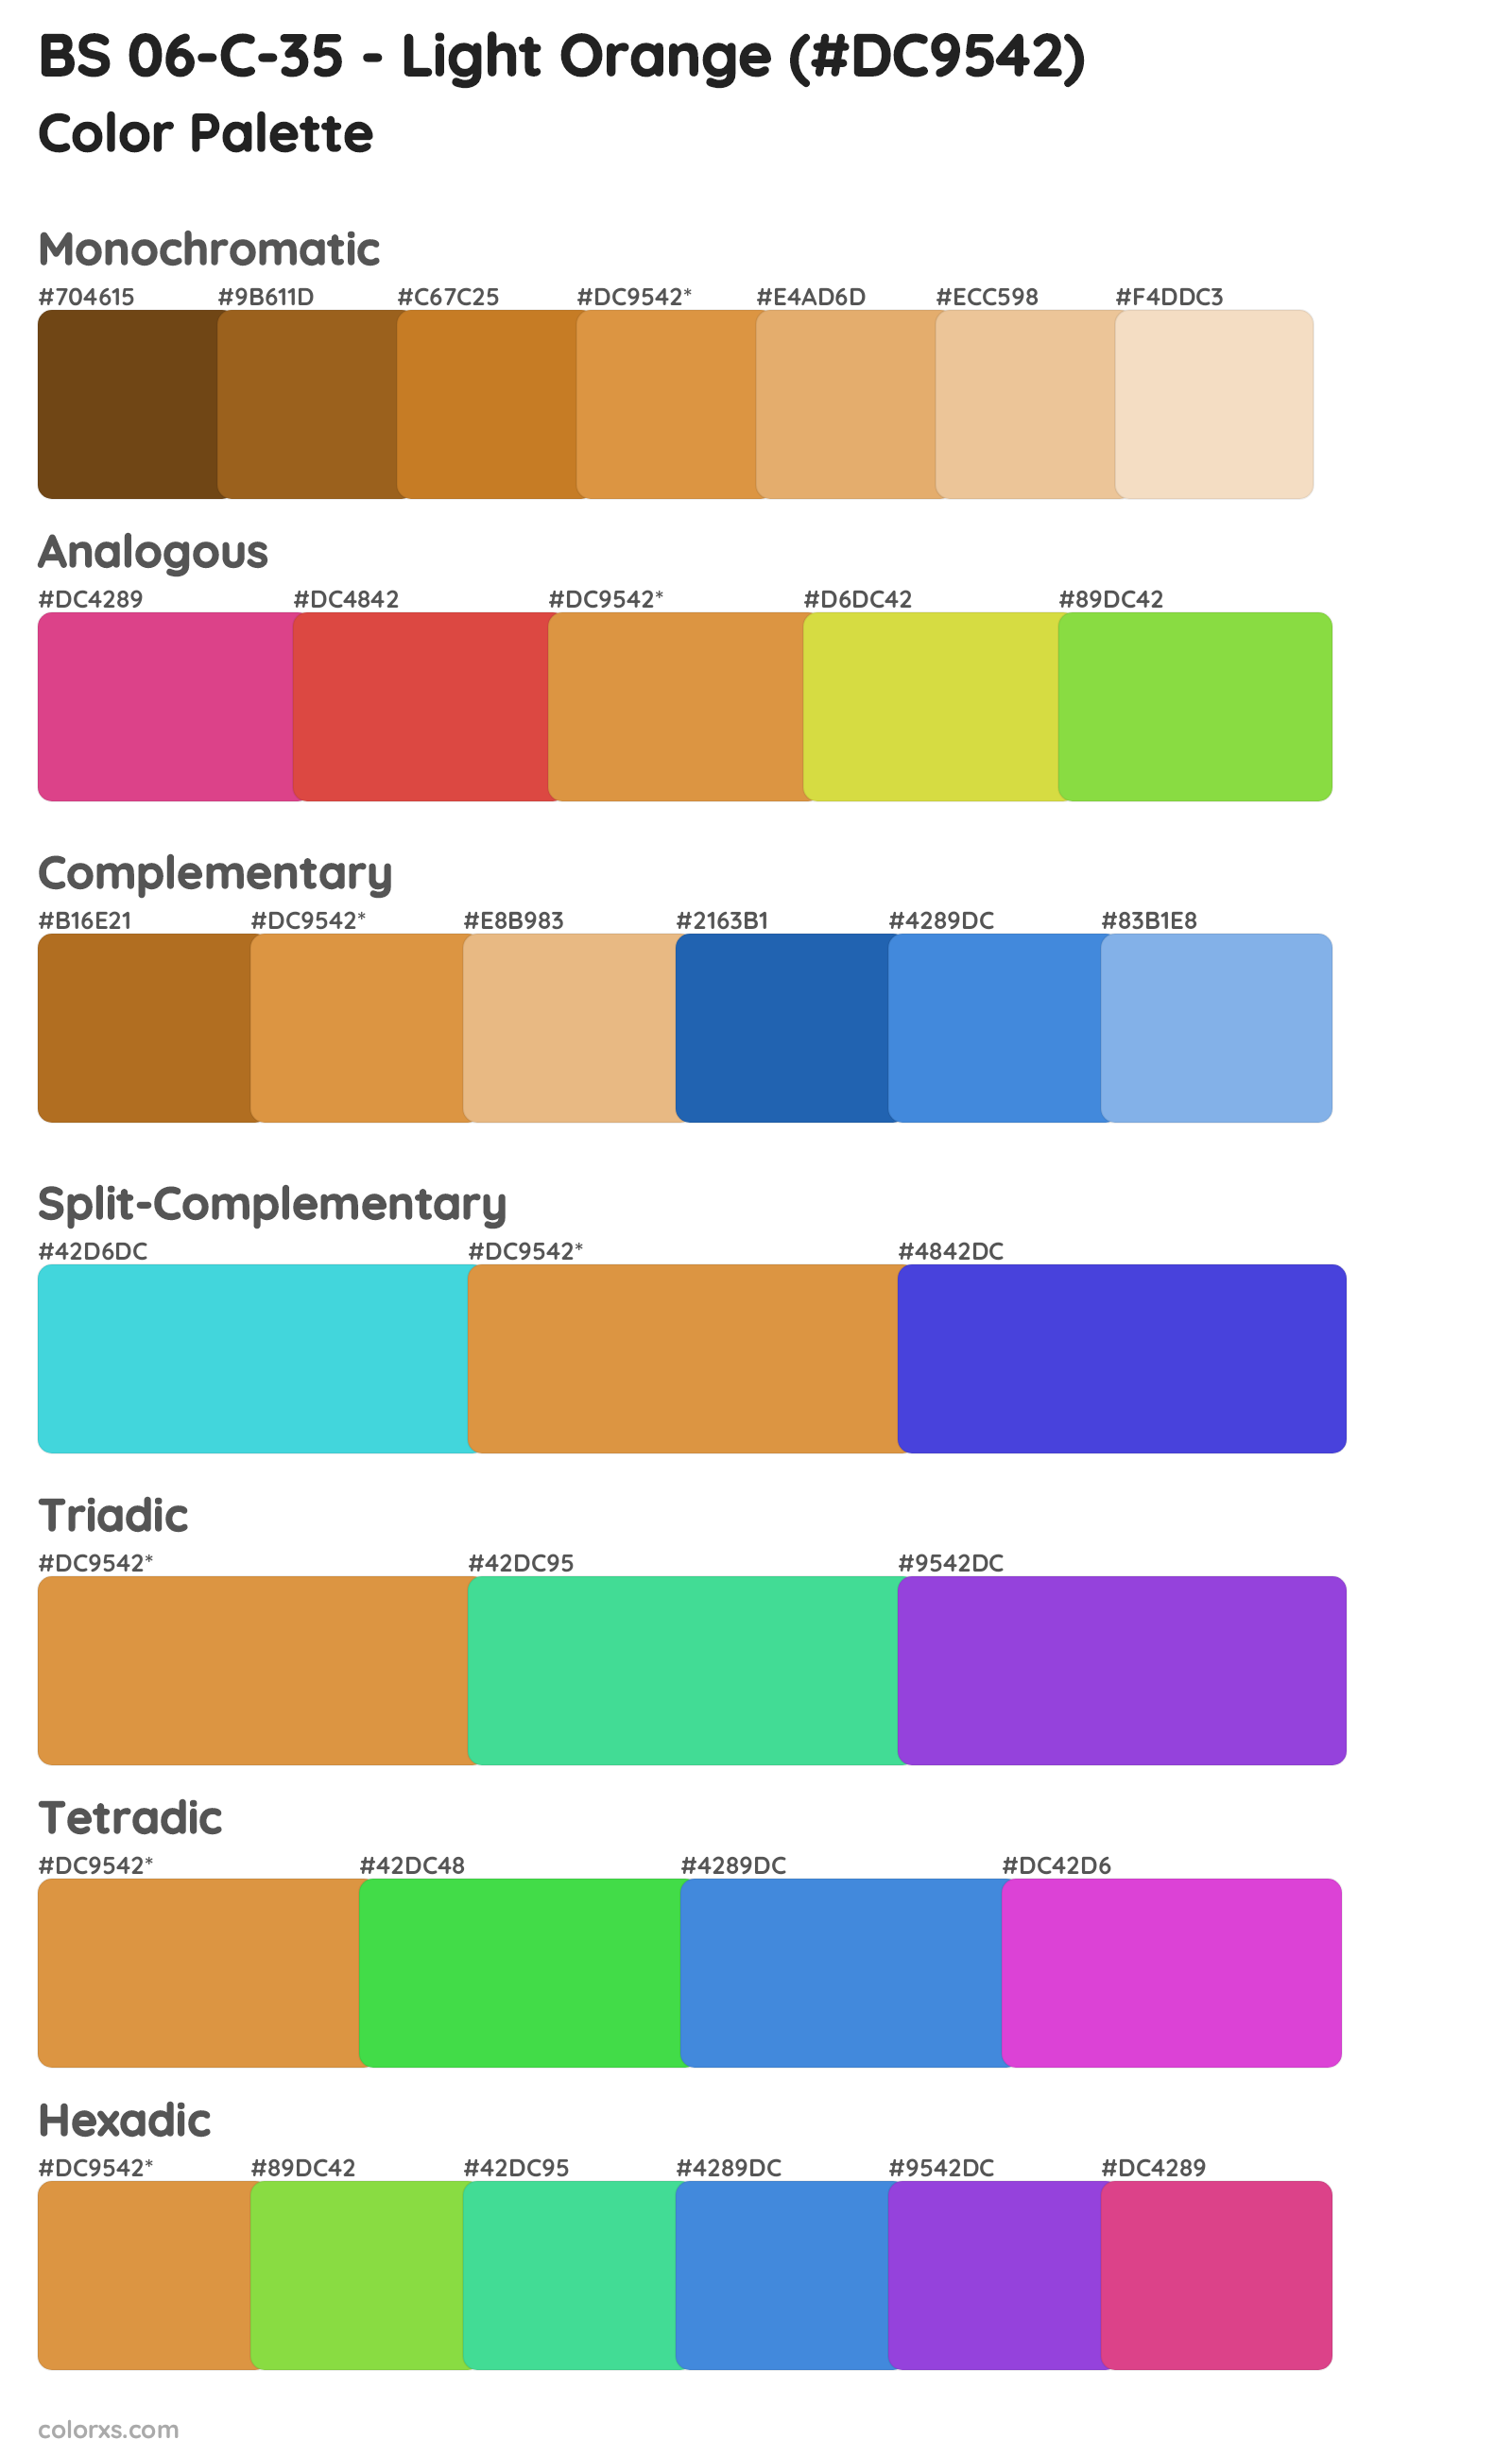 BS 06-C-35 - Light Orange Color Scheme Palettes